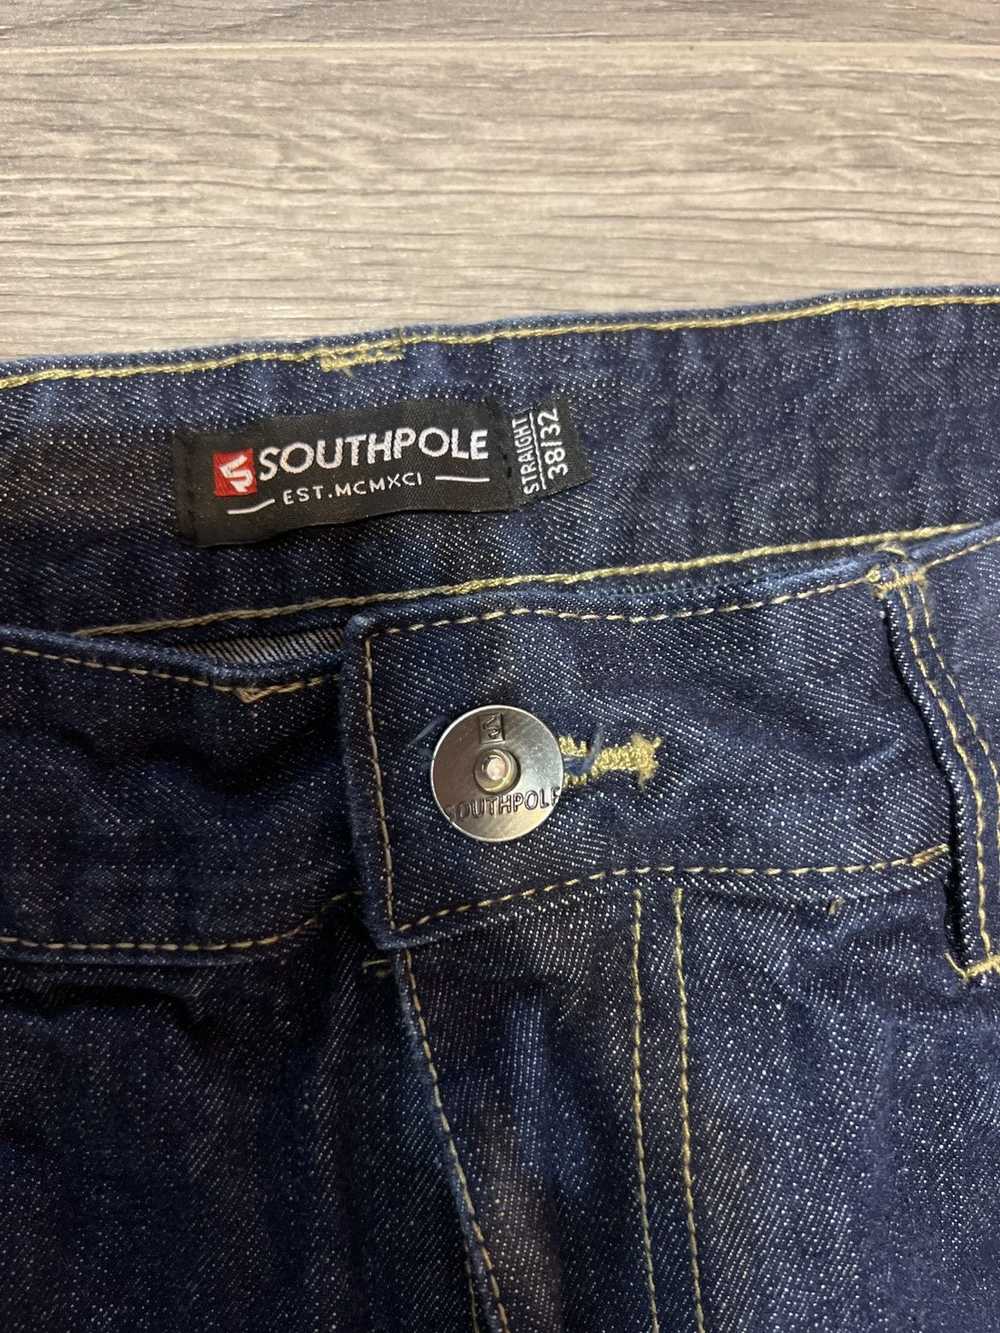 Southpole × Vintage Crazy Y2K Southpole Jeans - image 10